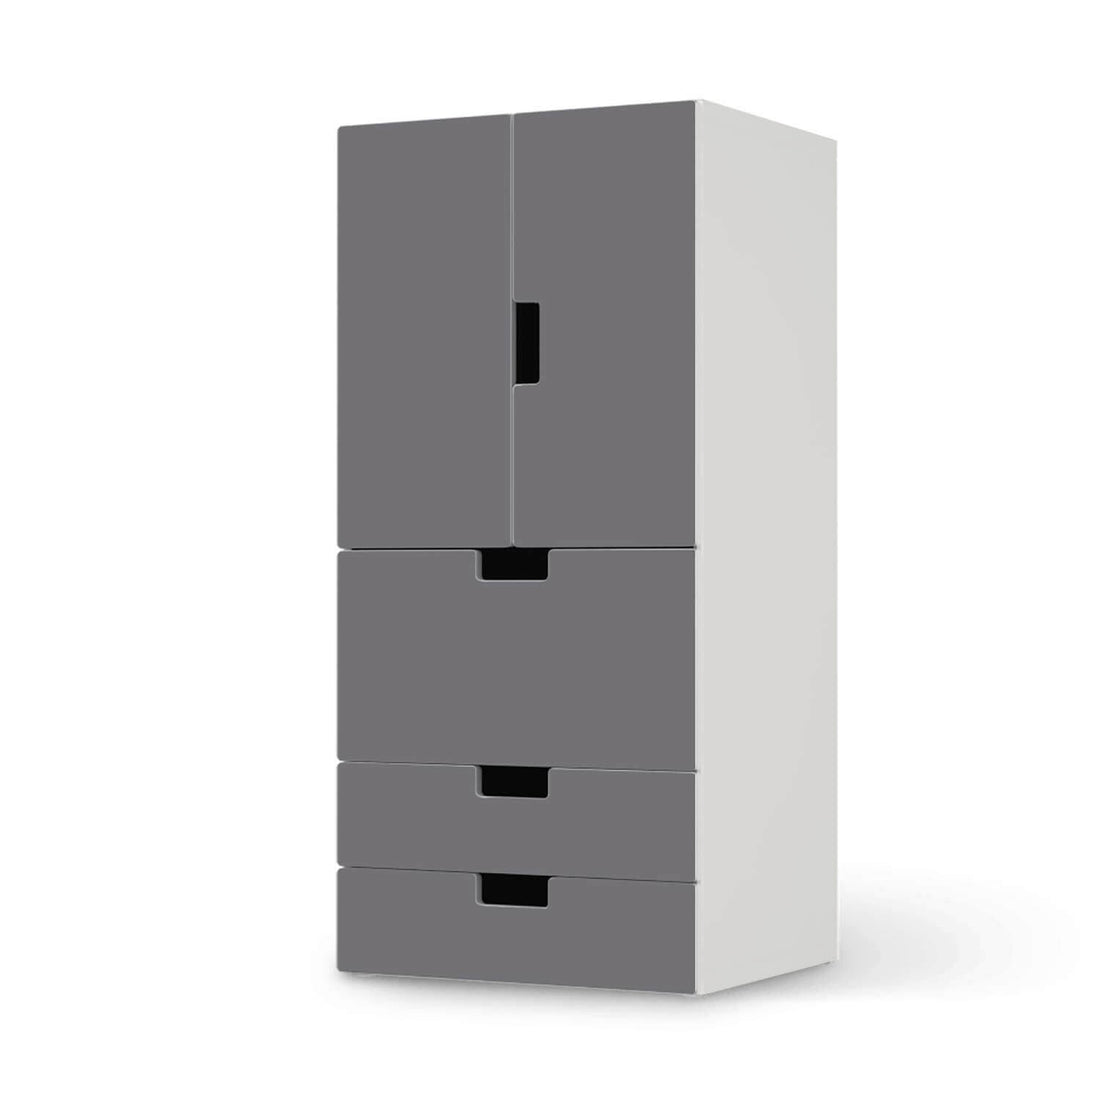 Möbelfolie Grau Light - IKEA Stuva kombiniert - 3 Schubladen und 2 kleine Türen  - weiss